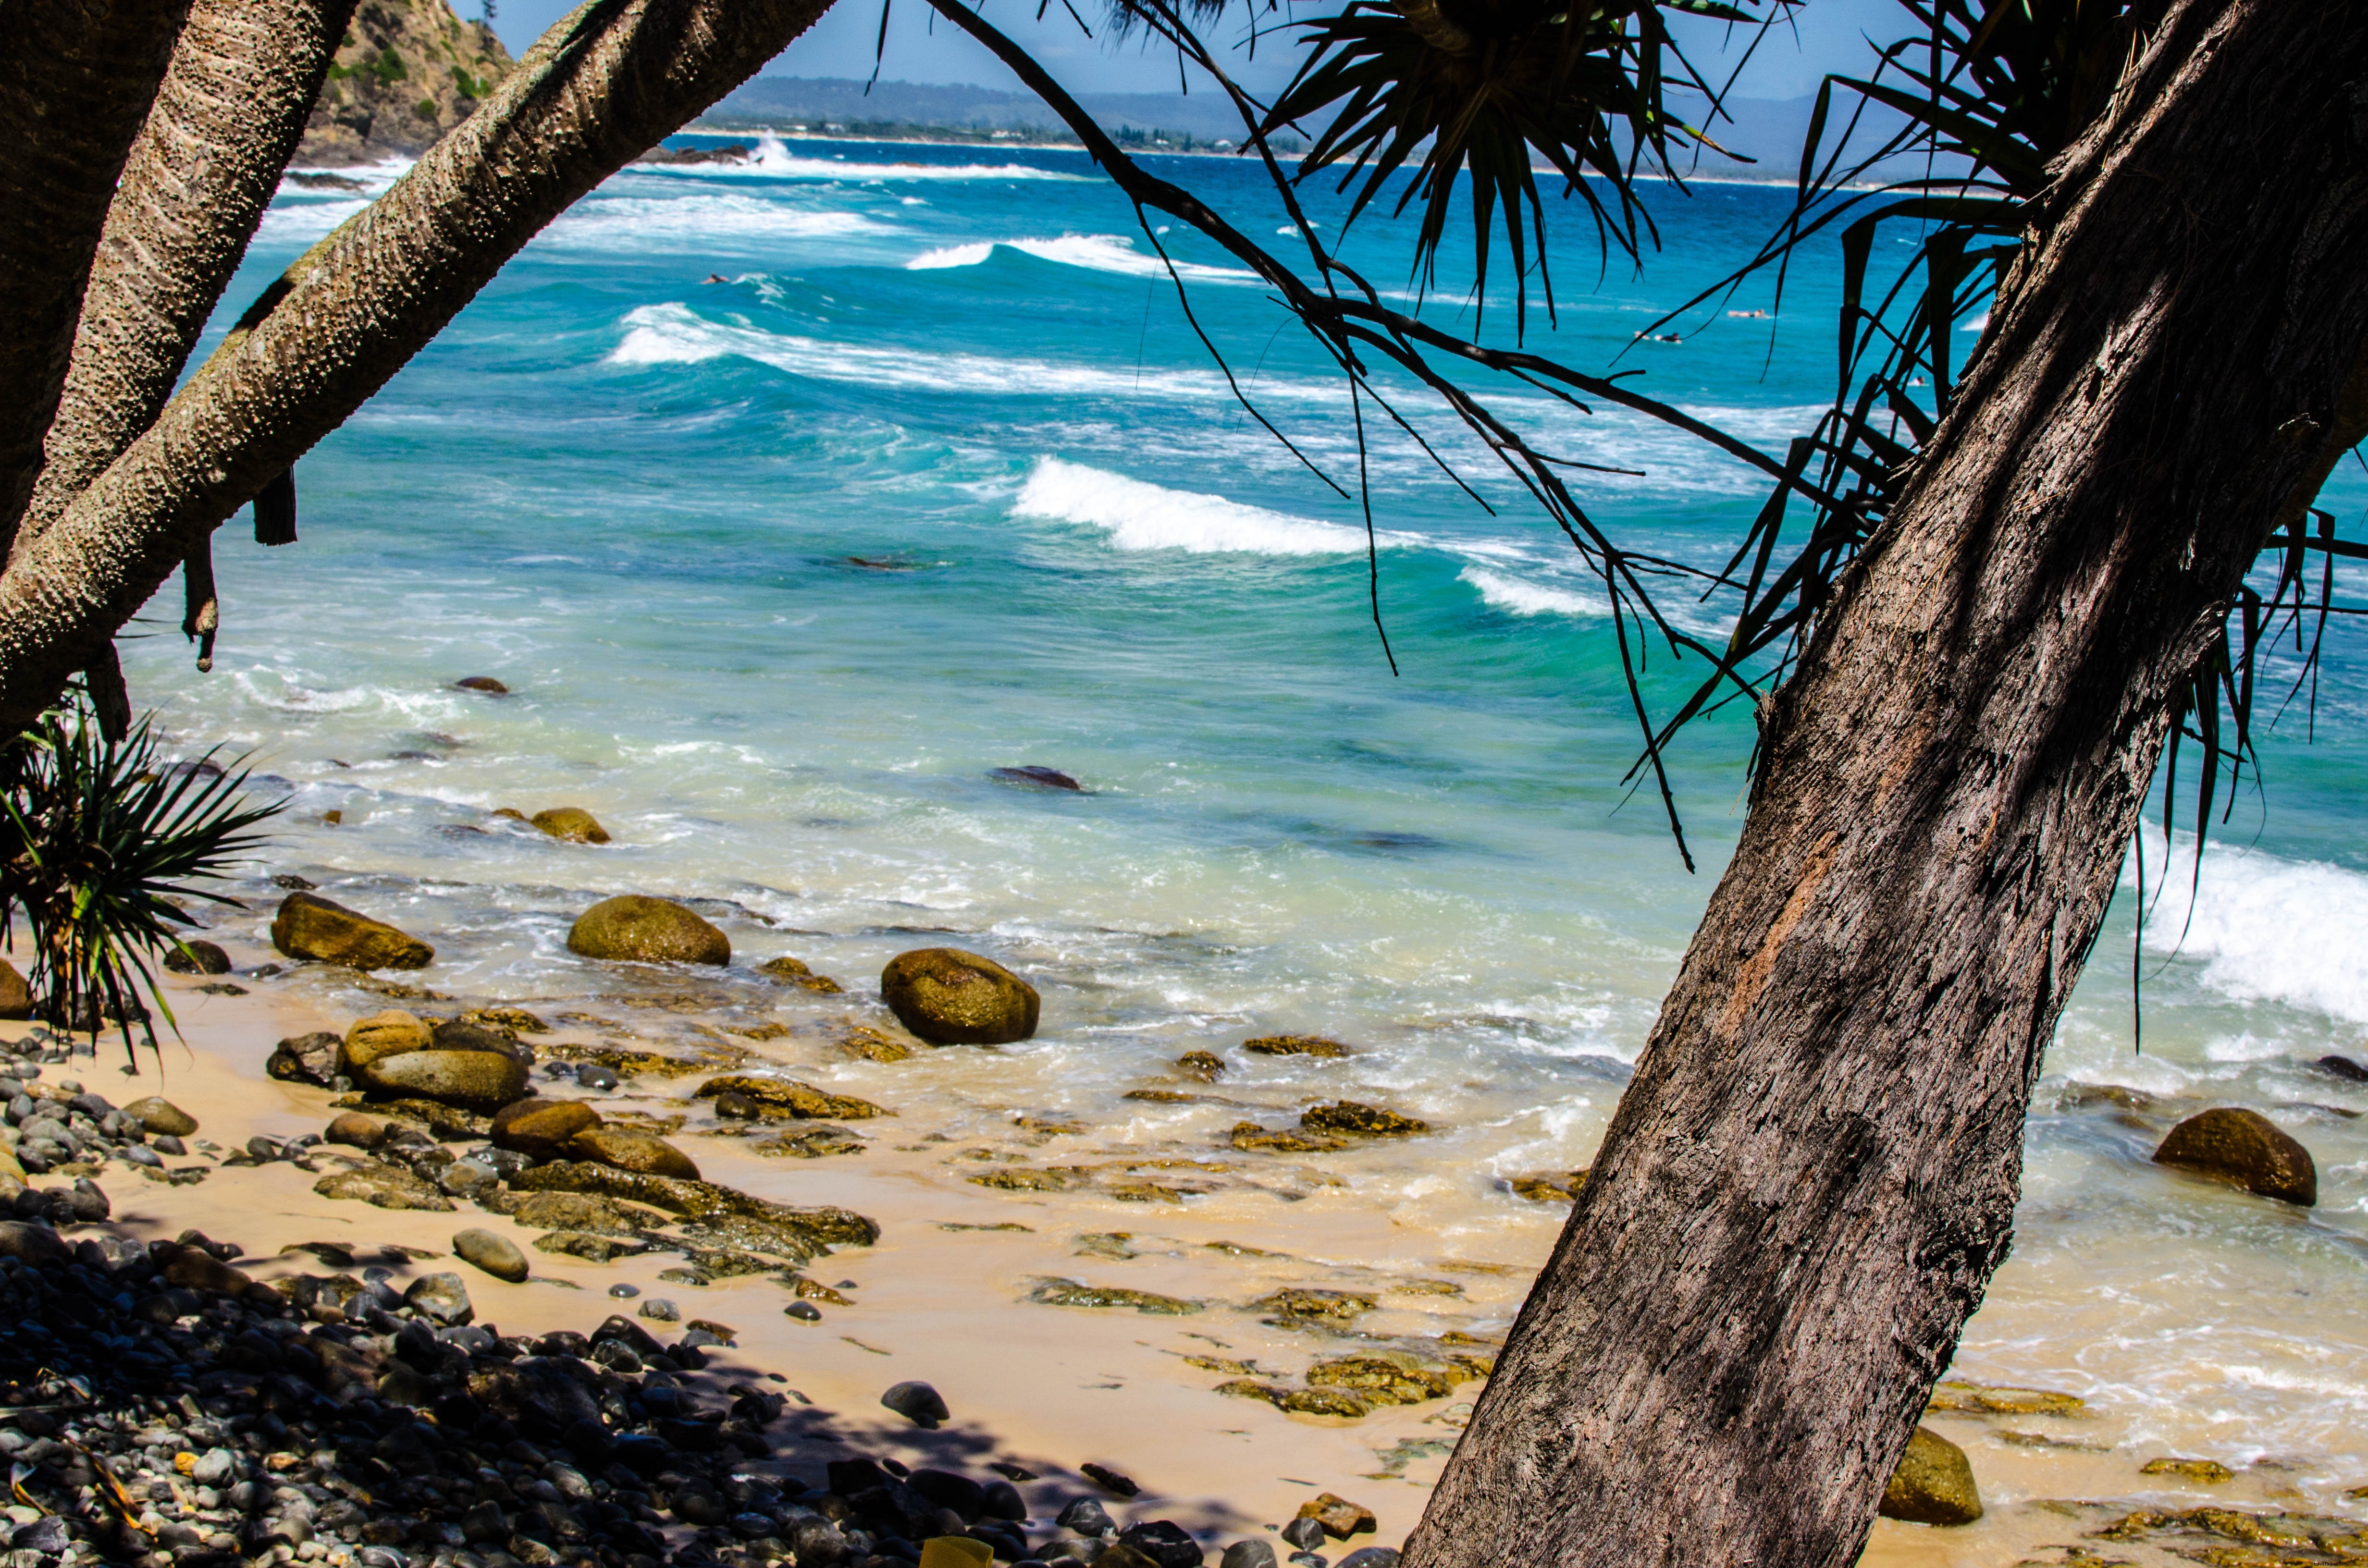 Des vagues bleues roulent sur des galets sur une photo de plage bordée de palmiers